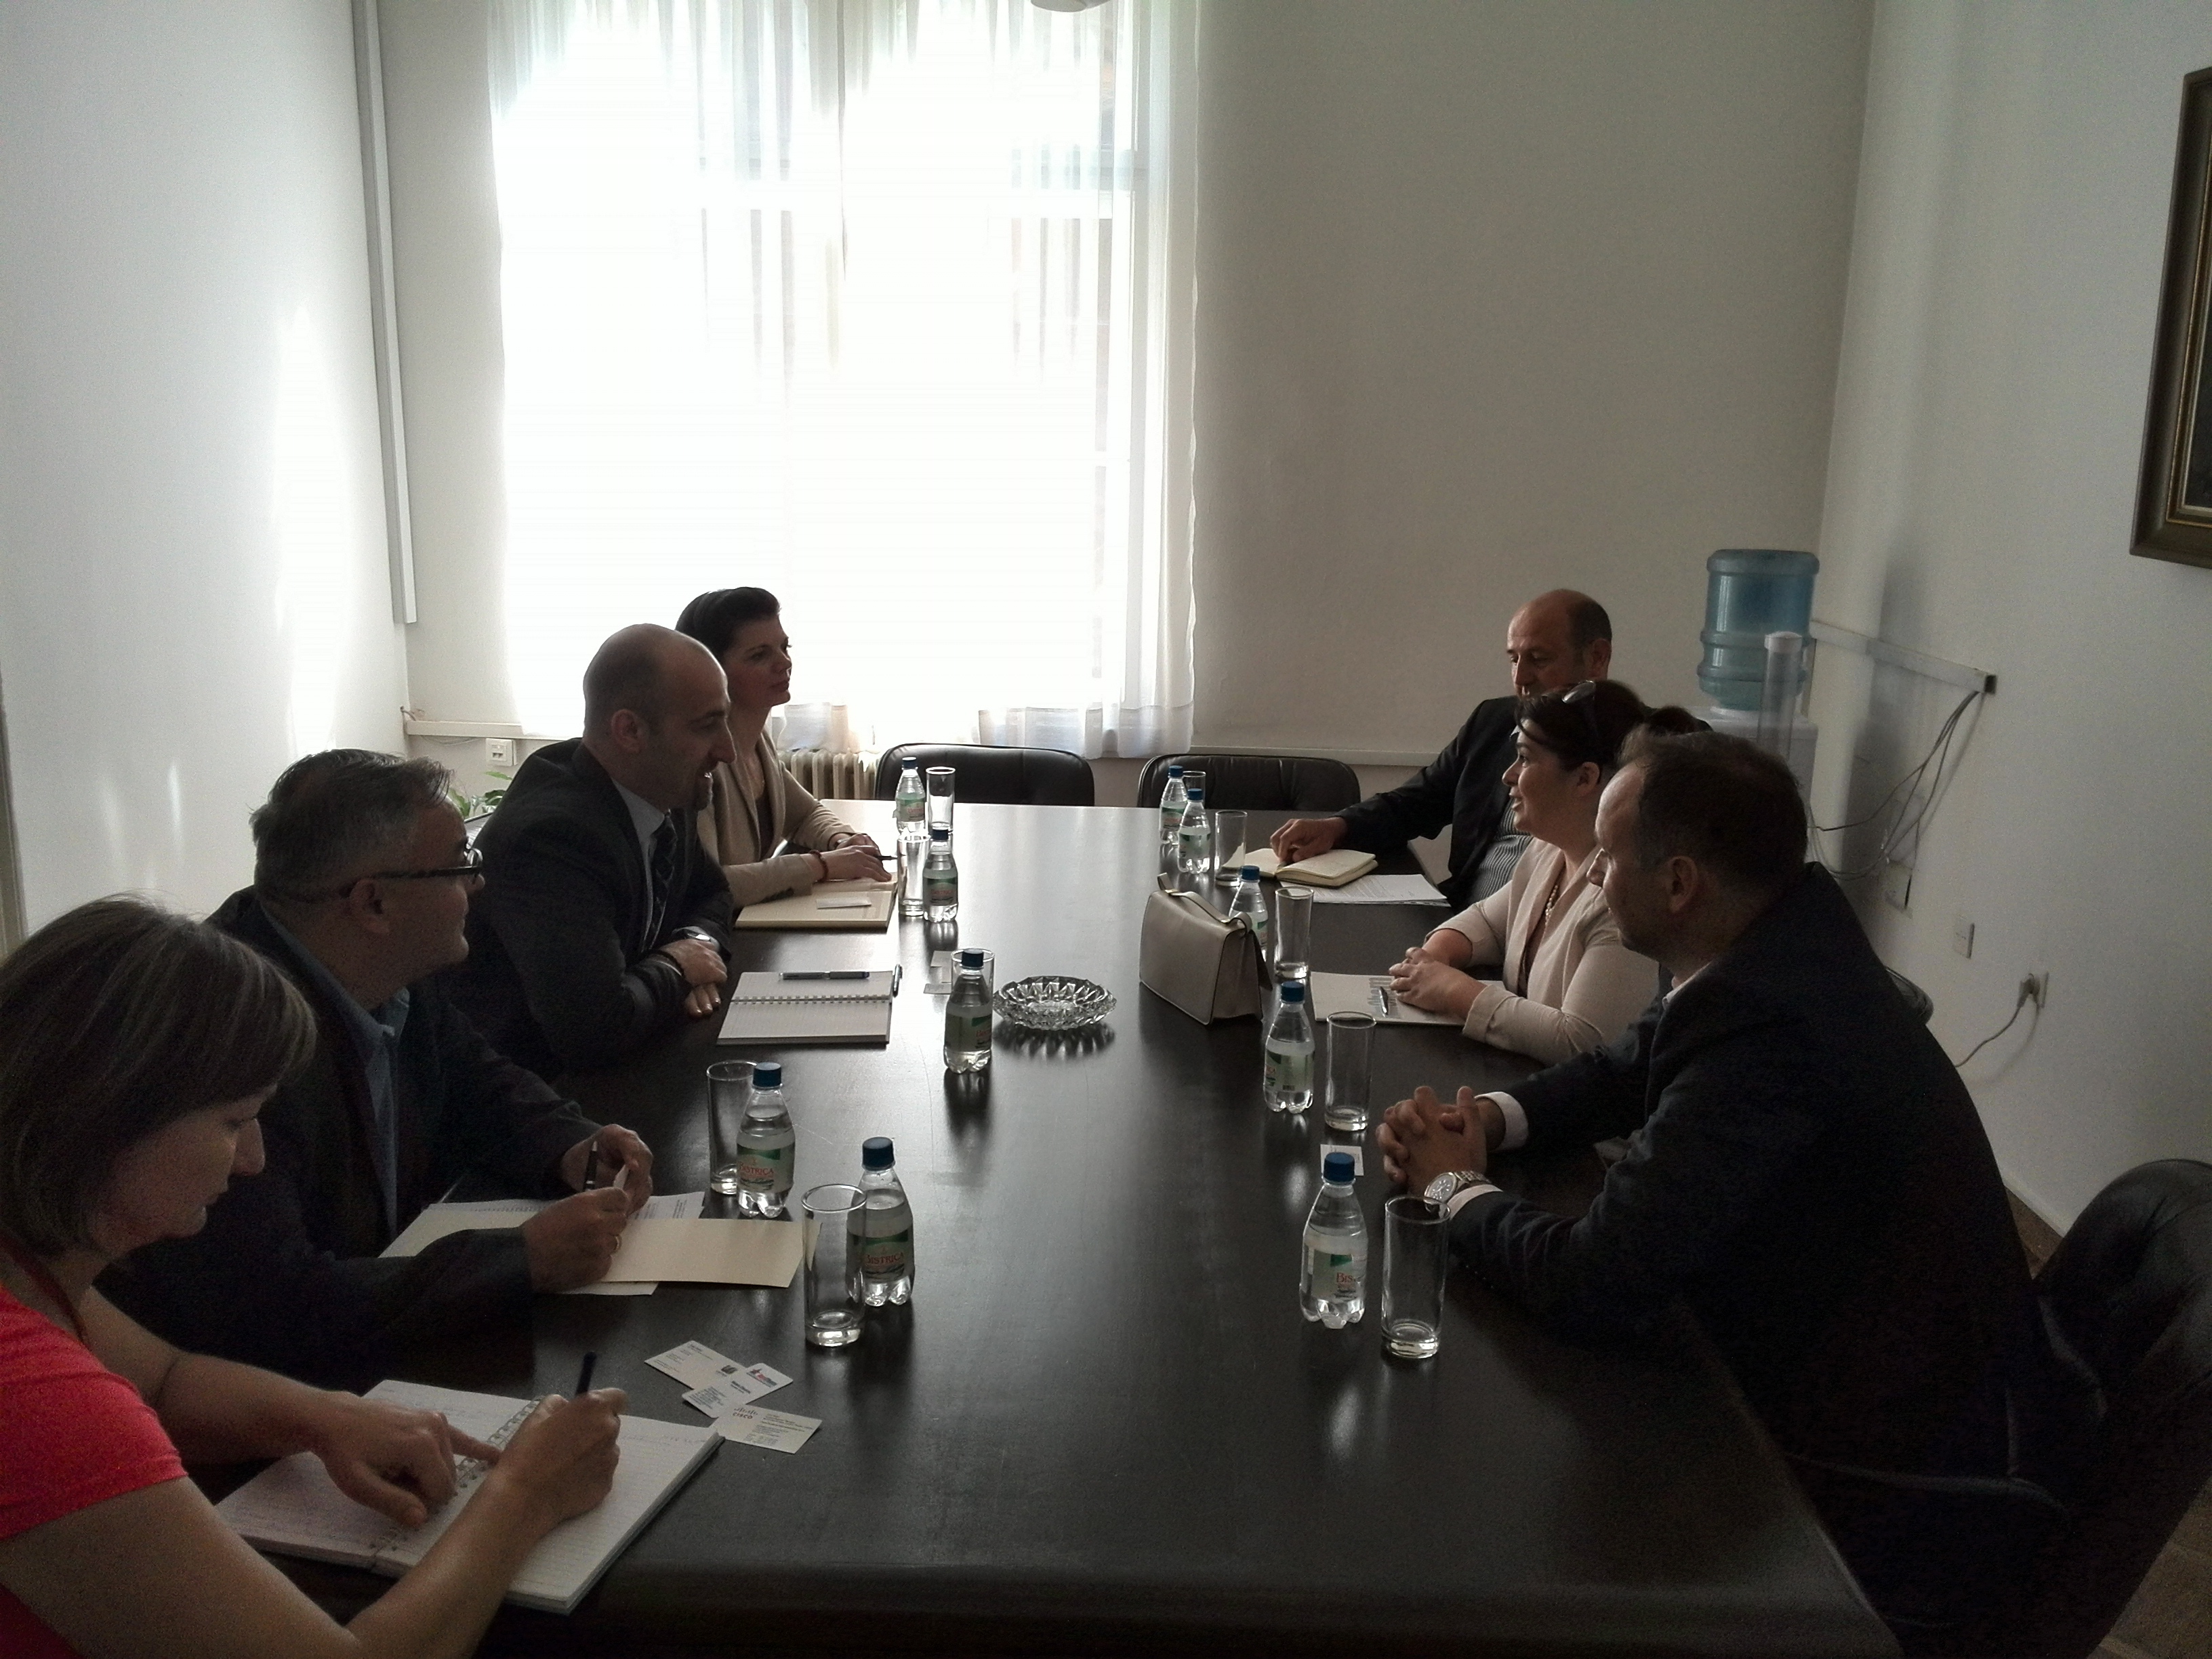 Picture for Sarajevo, 22. kolovoz 2014. godine -  Ministar vanjske trgovine i ekonomskih odnosa BiH mr. Boris Tučić sastao se danas u svom uredu s predstavnicima Američke gospodarske komore, kompanije CISCO Systems i CEO Telemach BH.